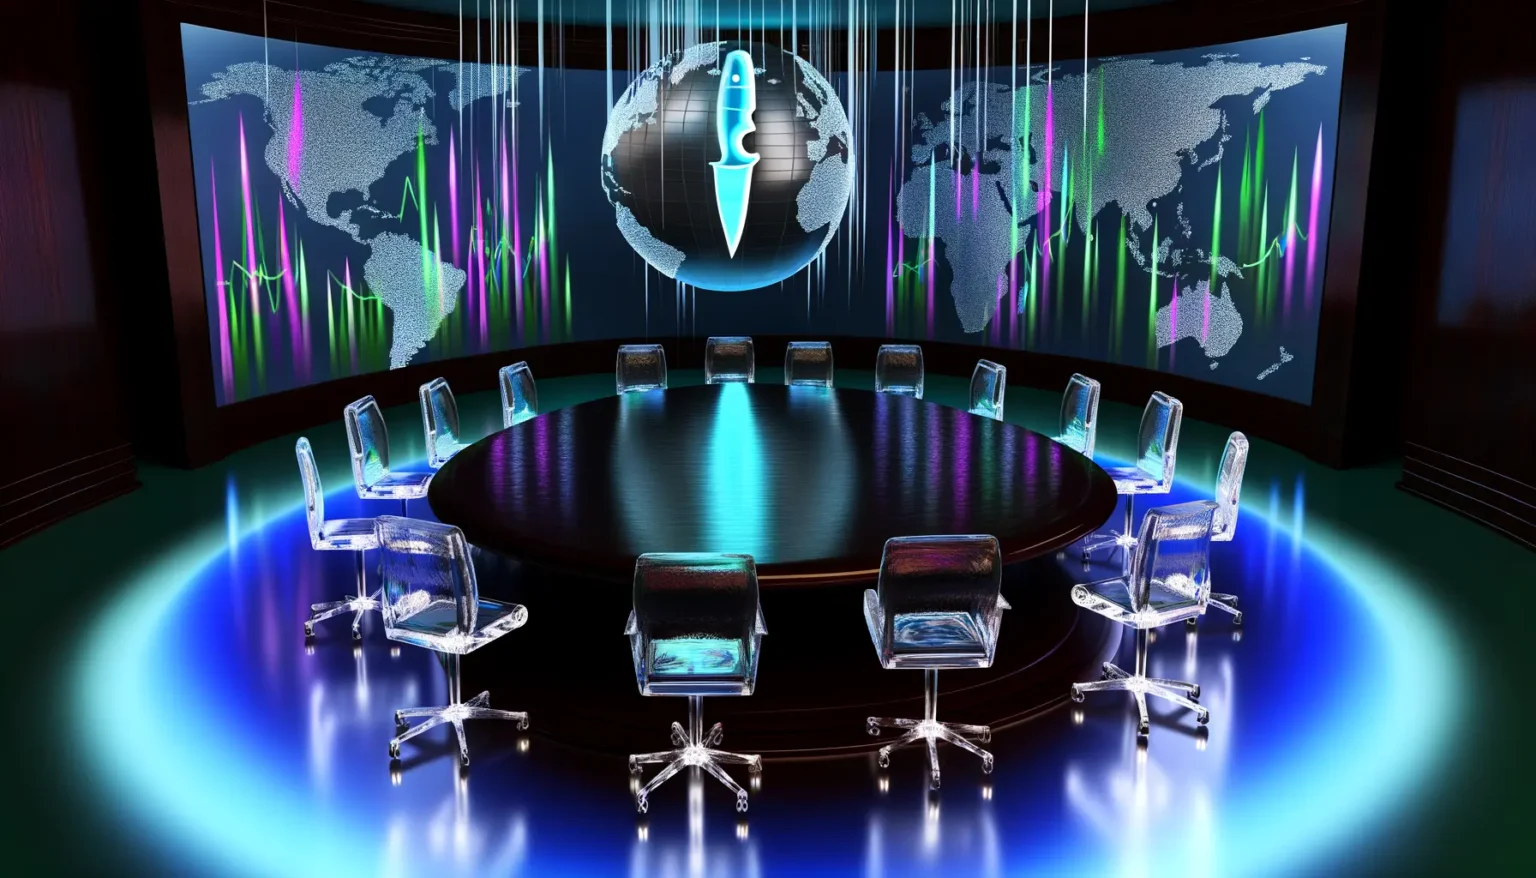 Ein futuristisch gestalteter Konferenzsaal mit einem ovalen Tisch und transparenten Stühlen. Die Wände sind mit Leinwänden verziert, die eine Weltkarte und dynamische, bunte Grafiken zeigen. Der Raum hat eine blaue Beleuchtungsatmosphäre und im Zentrum des Tisches scheint ein bläuliches Licht.